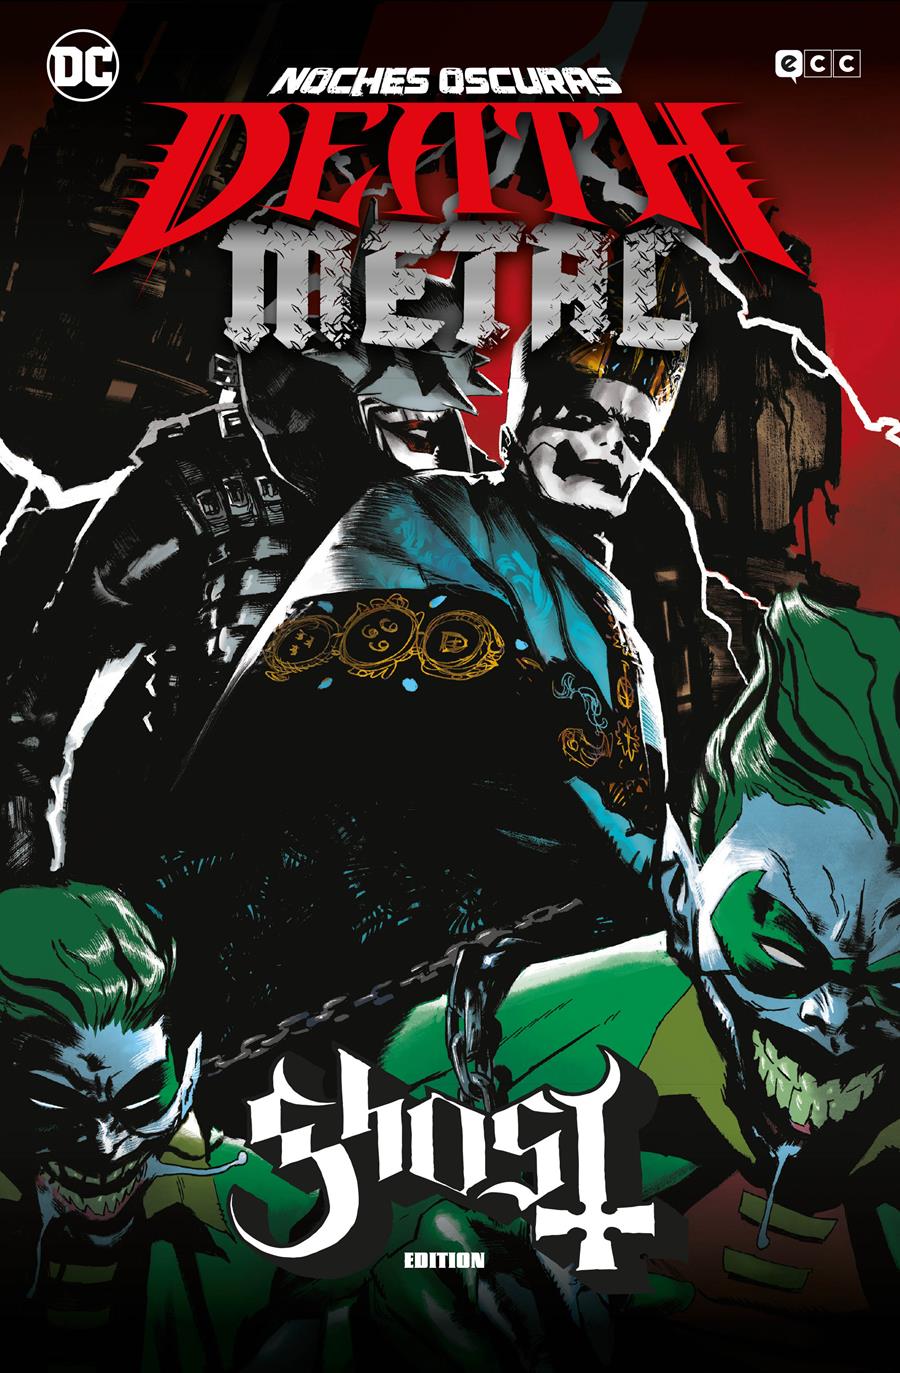 Noches oscuras: Death Metal núm. 02 de 7 (Ghost Band Edition) (Rústica) | N0421-ECC62 | Scott Snyder, Greg Capullo | Terra de Còmic - Tu tienda de cómics online especializada en cómics, manga y merchandising